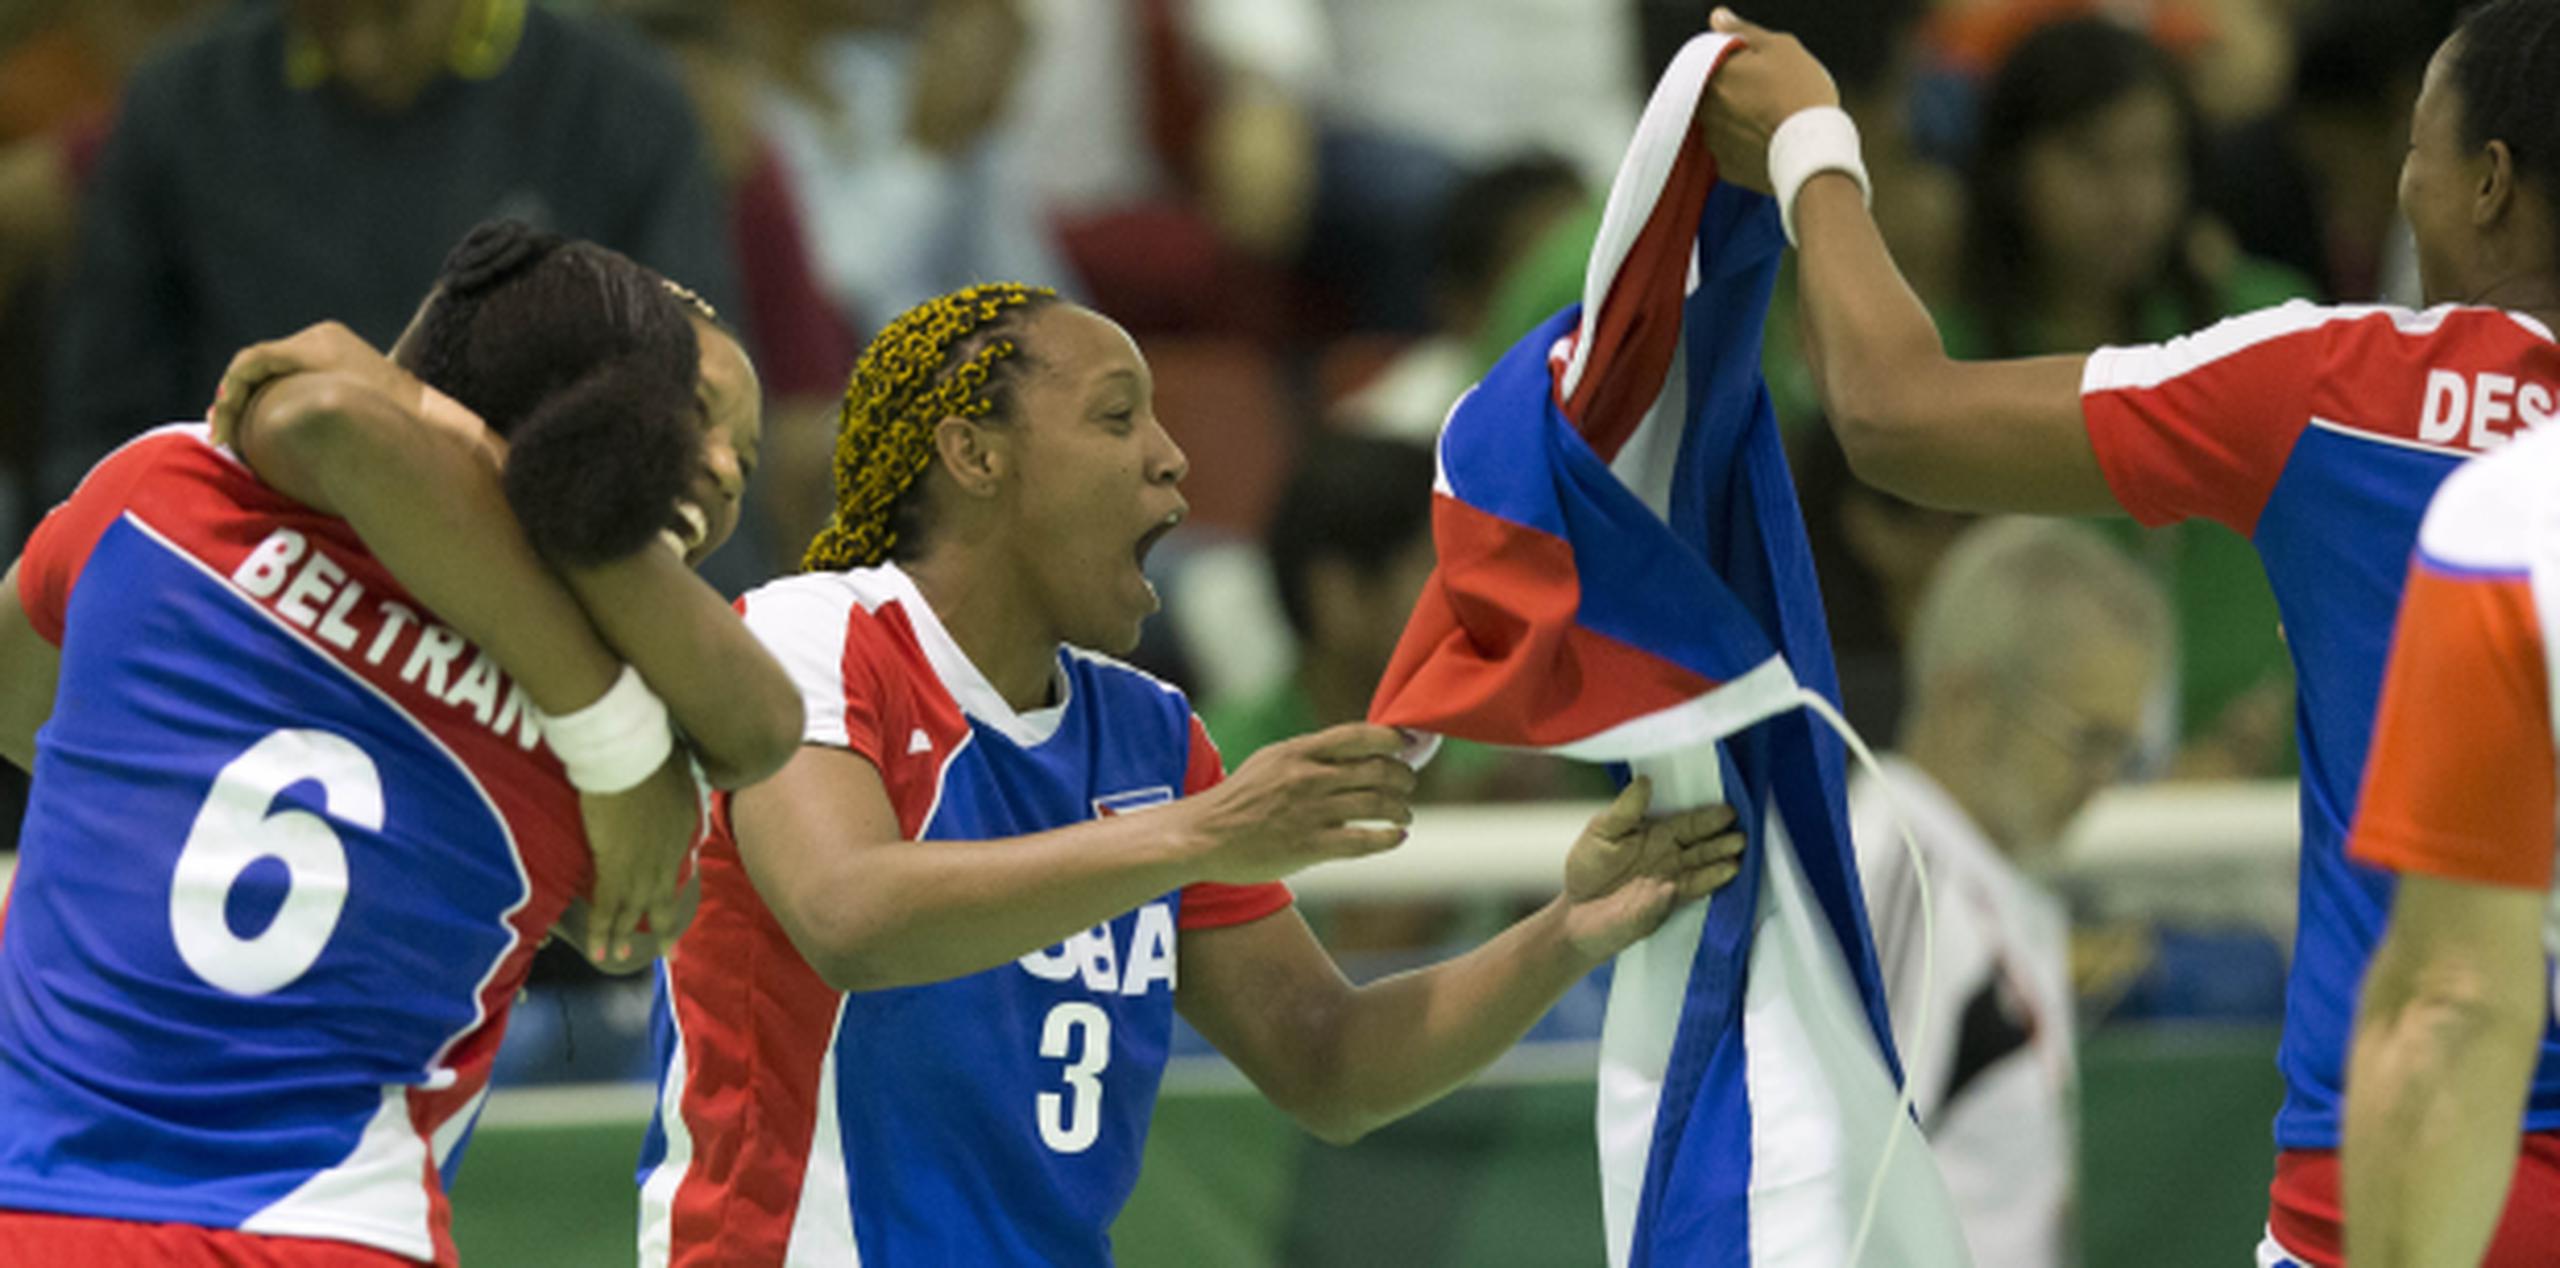 Juego final del balonmano femenino entre Puerto Rico y Cub. En la foto, las cubanas celebran la victoria y la medalla de oro.
(tonito.zayas@gfrmedia.com)